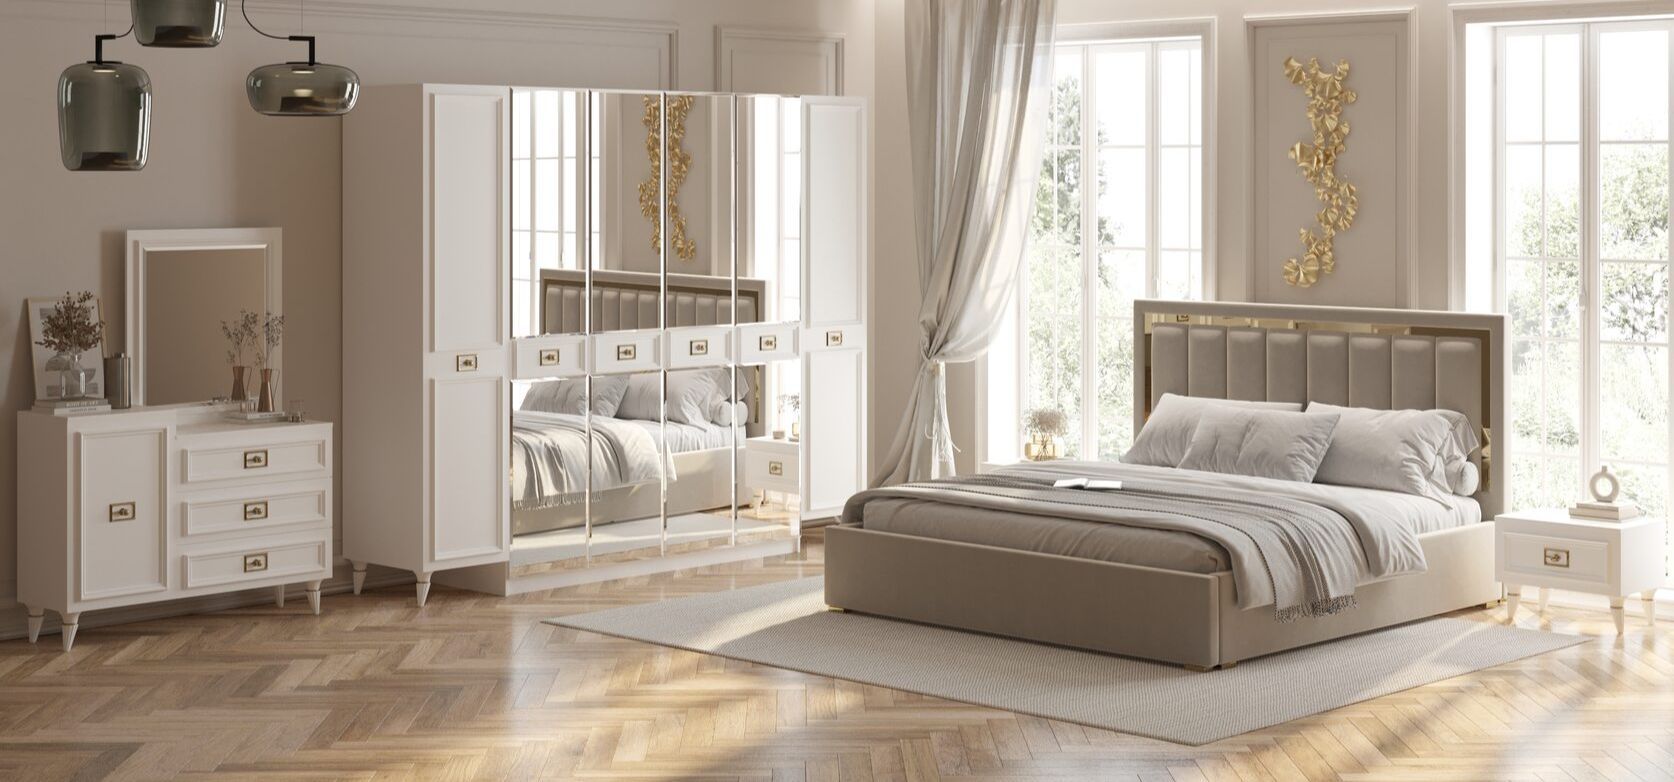 Спальня виктория размер кровати